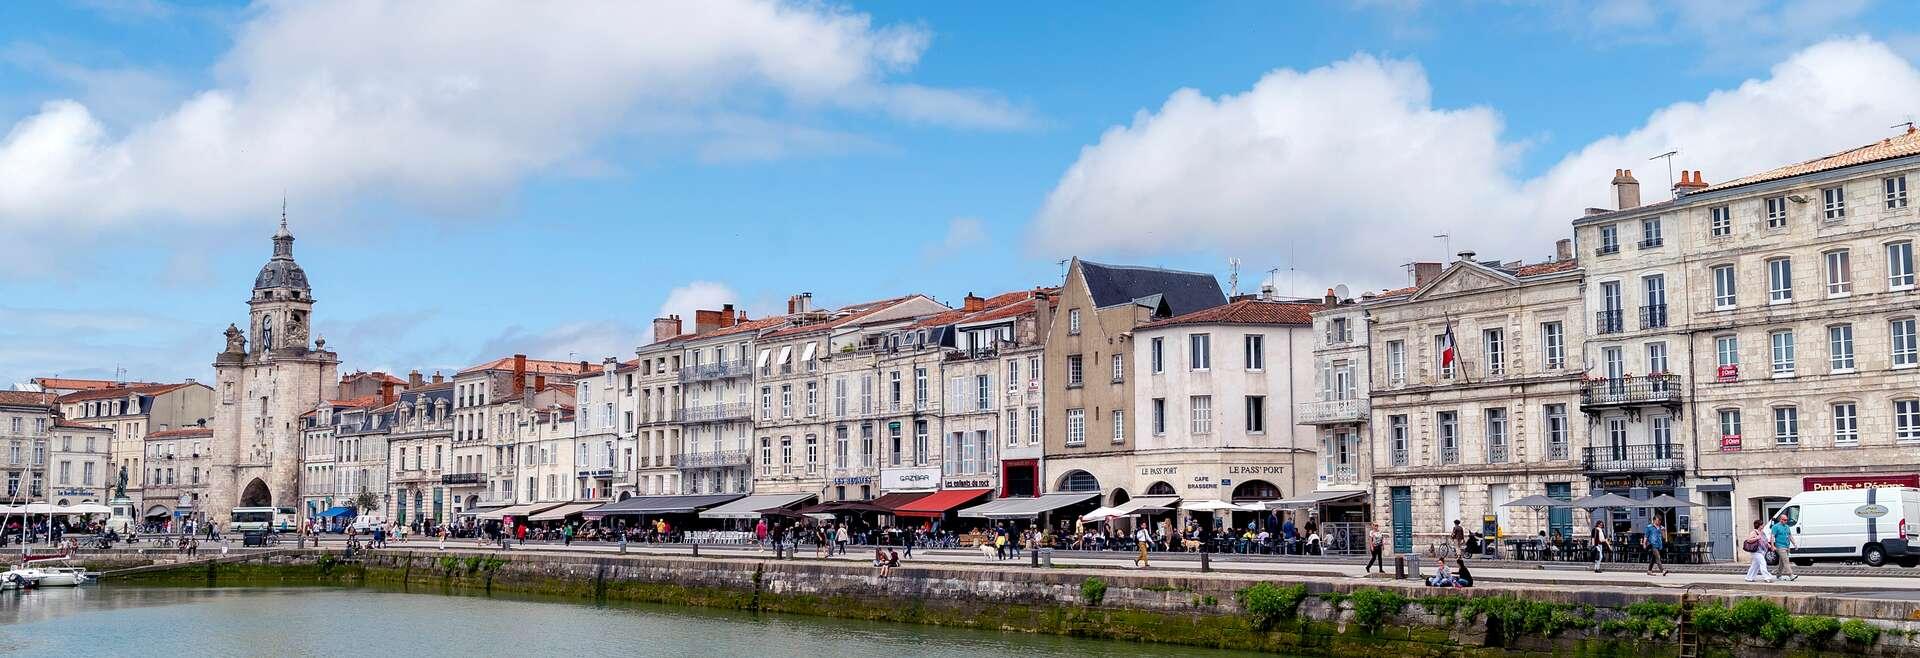 Séjour linguistique France, La Rochelle, Ville